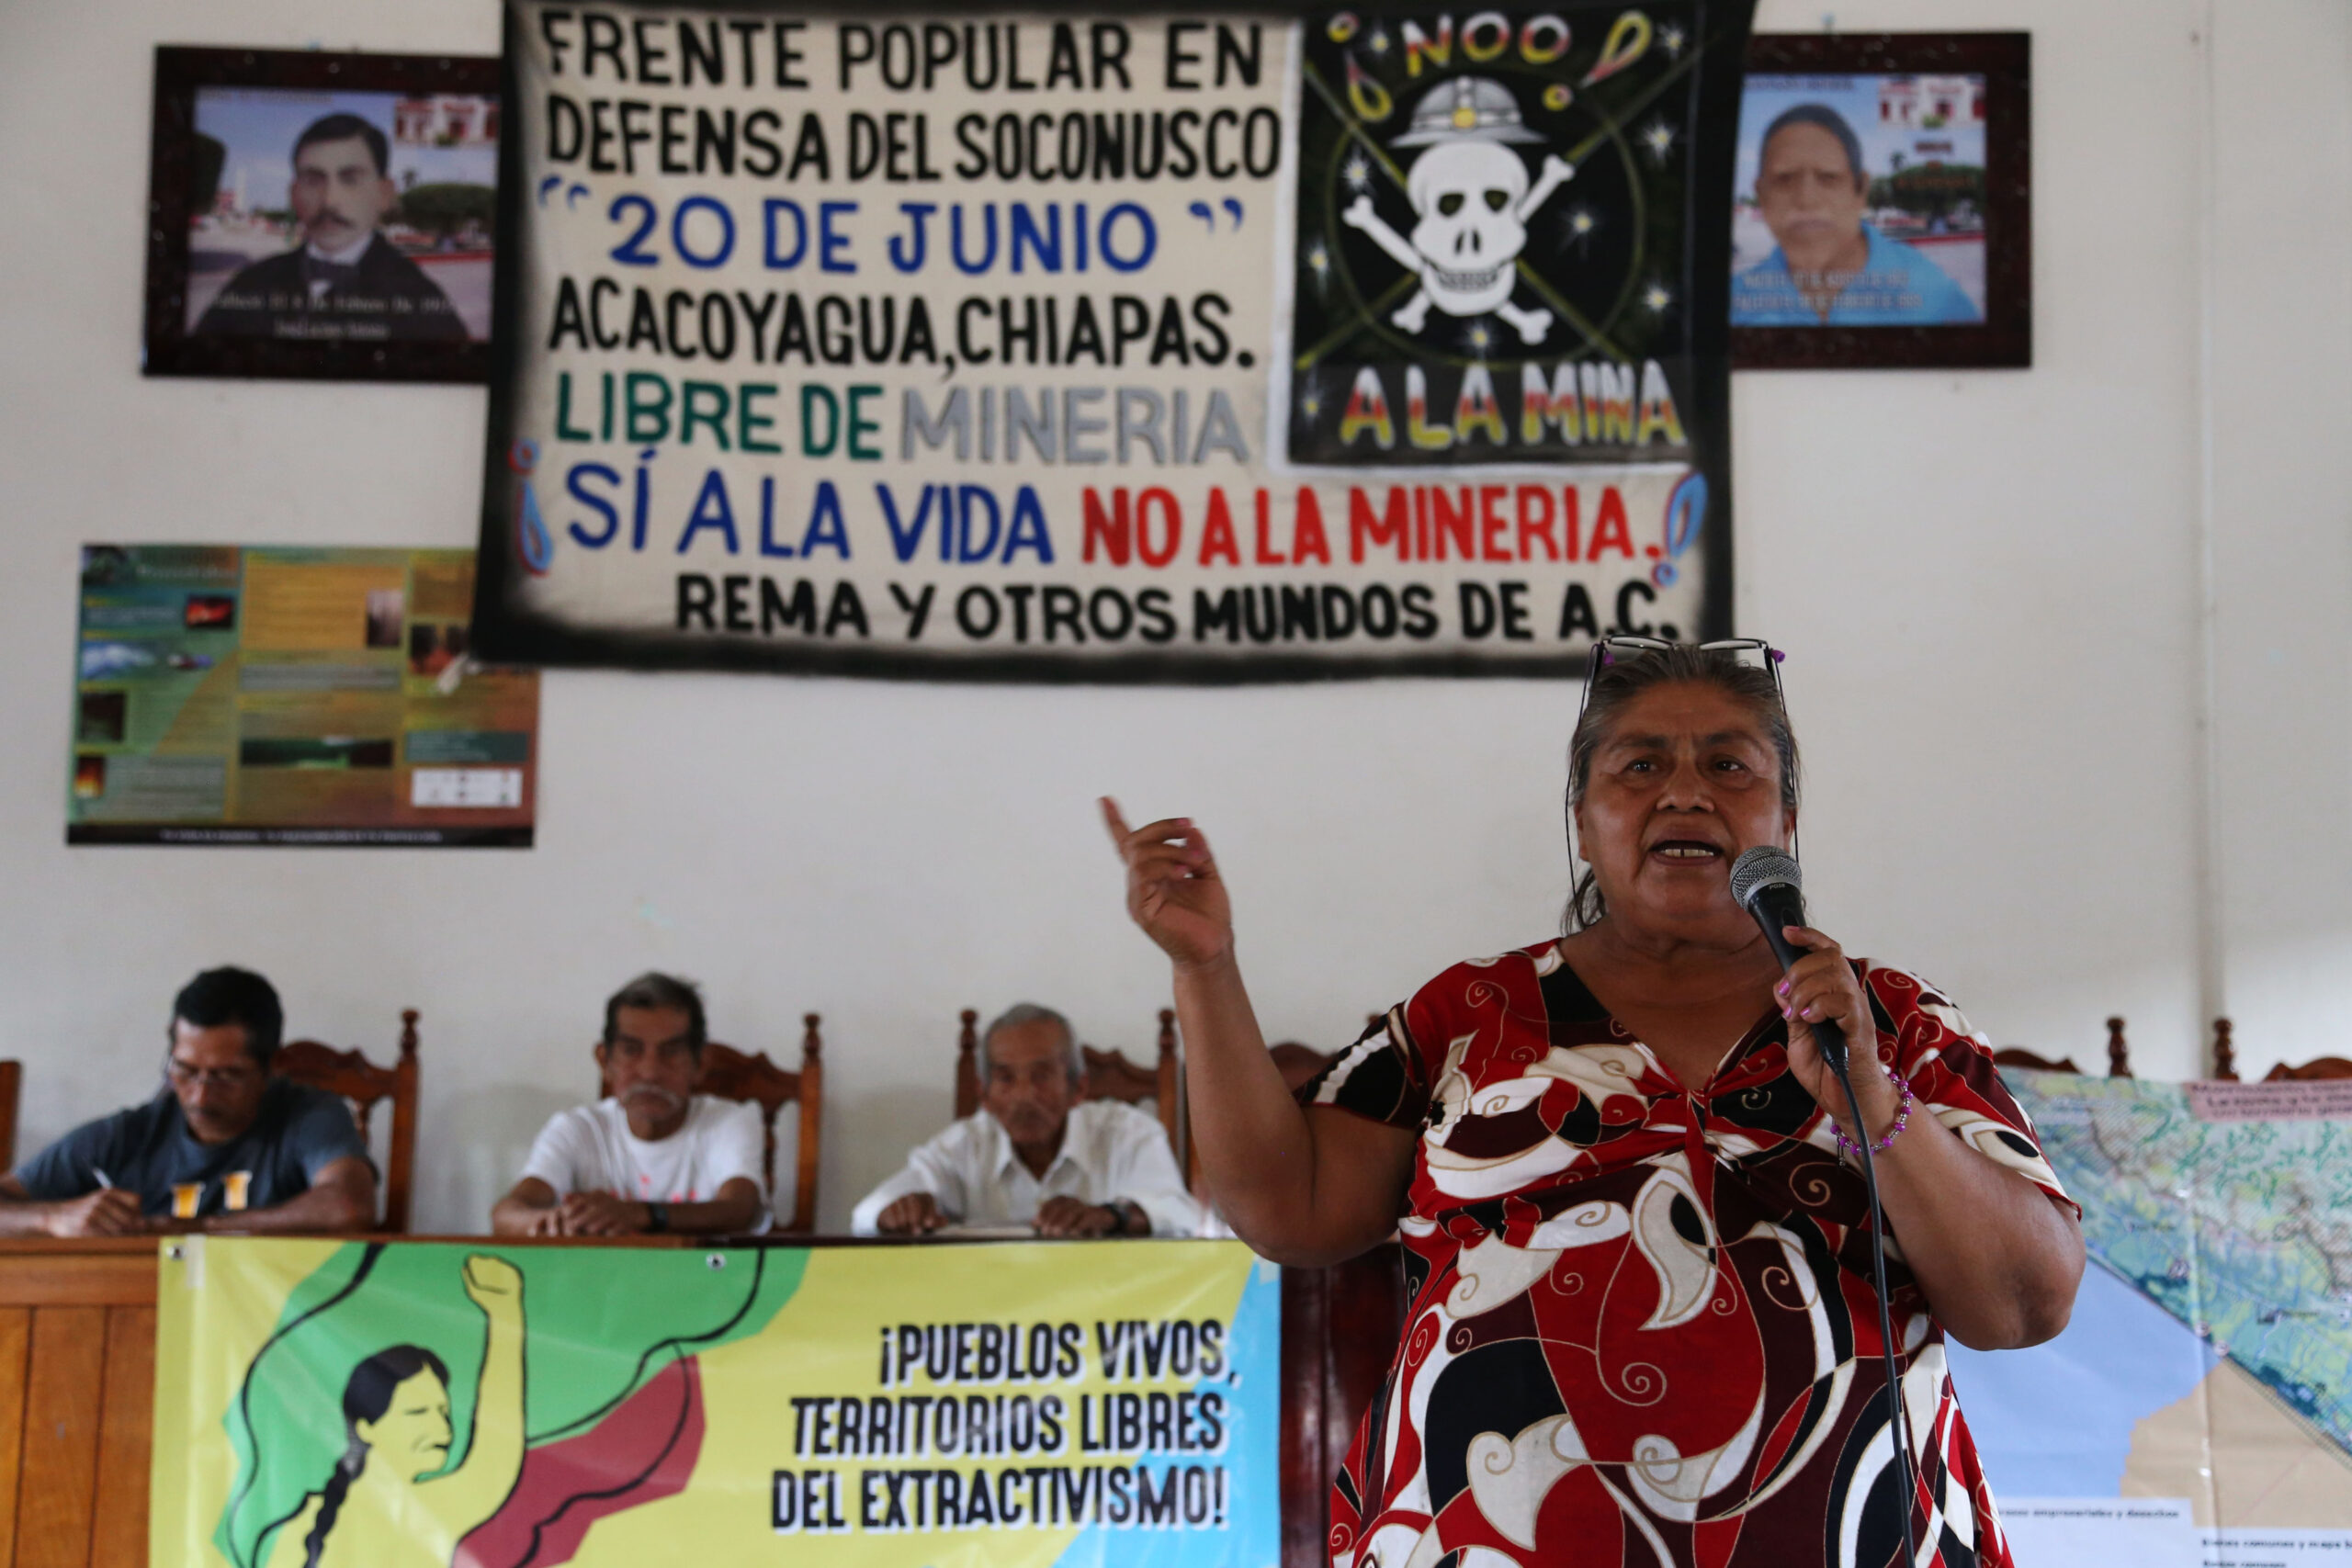 Pronunciamiento final del Encuentro "¡Pueblos Vivos, Libres del Extractivismo!"